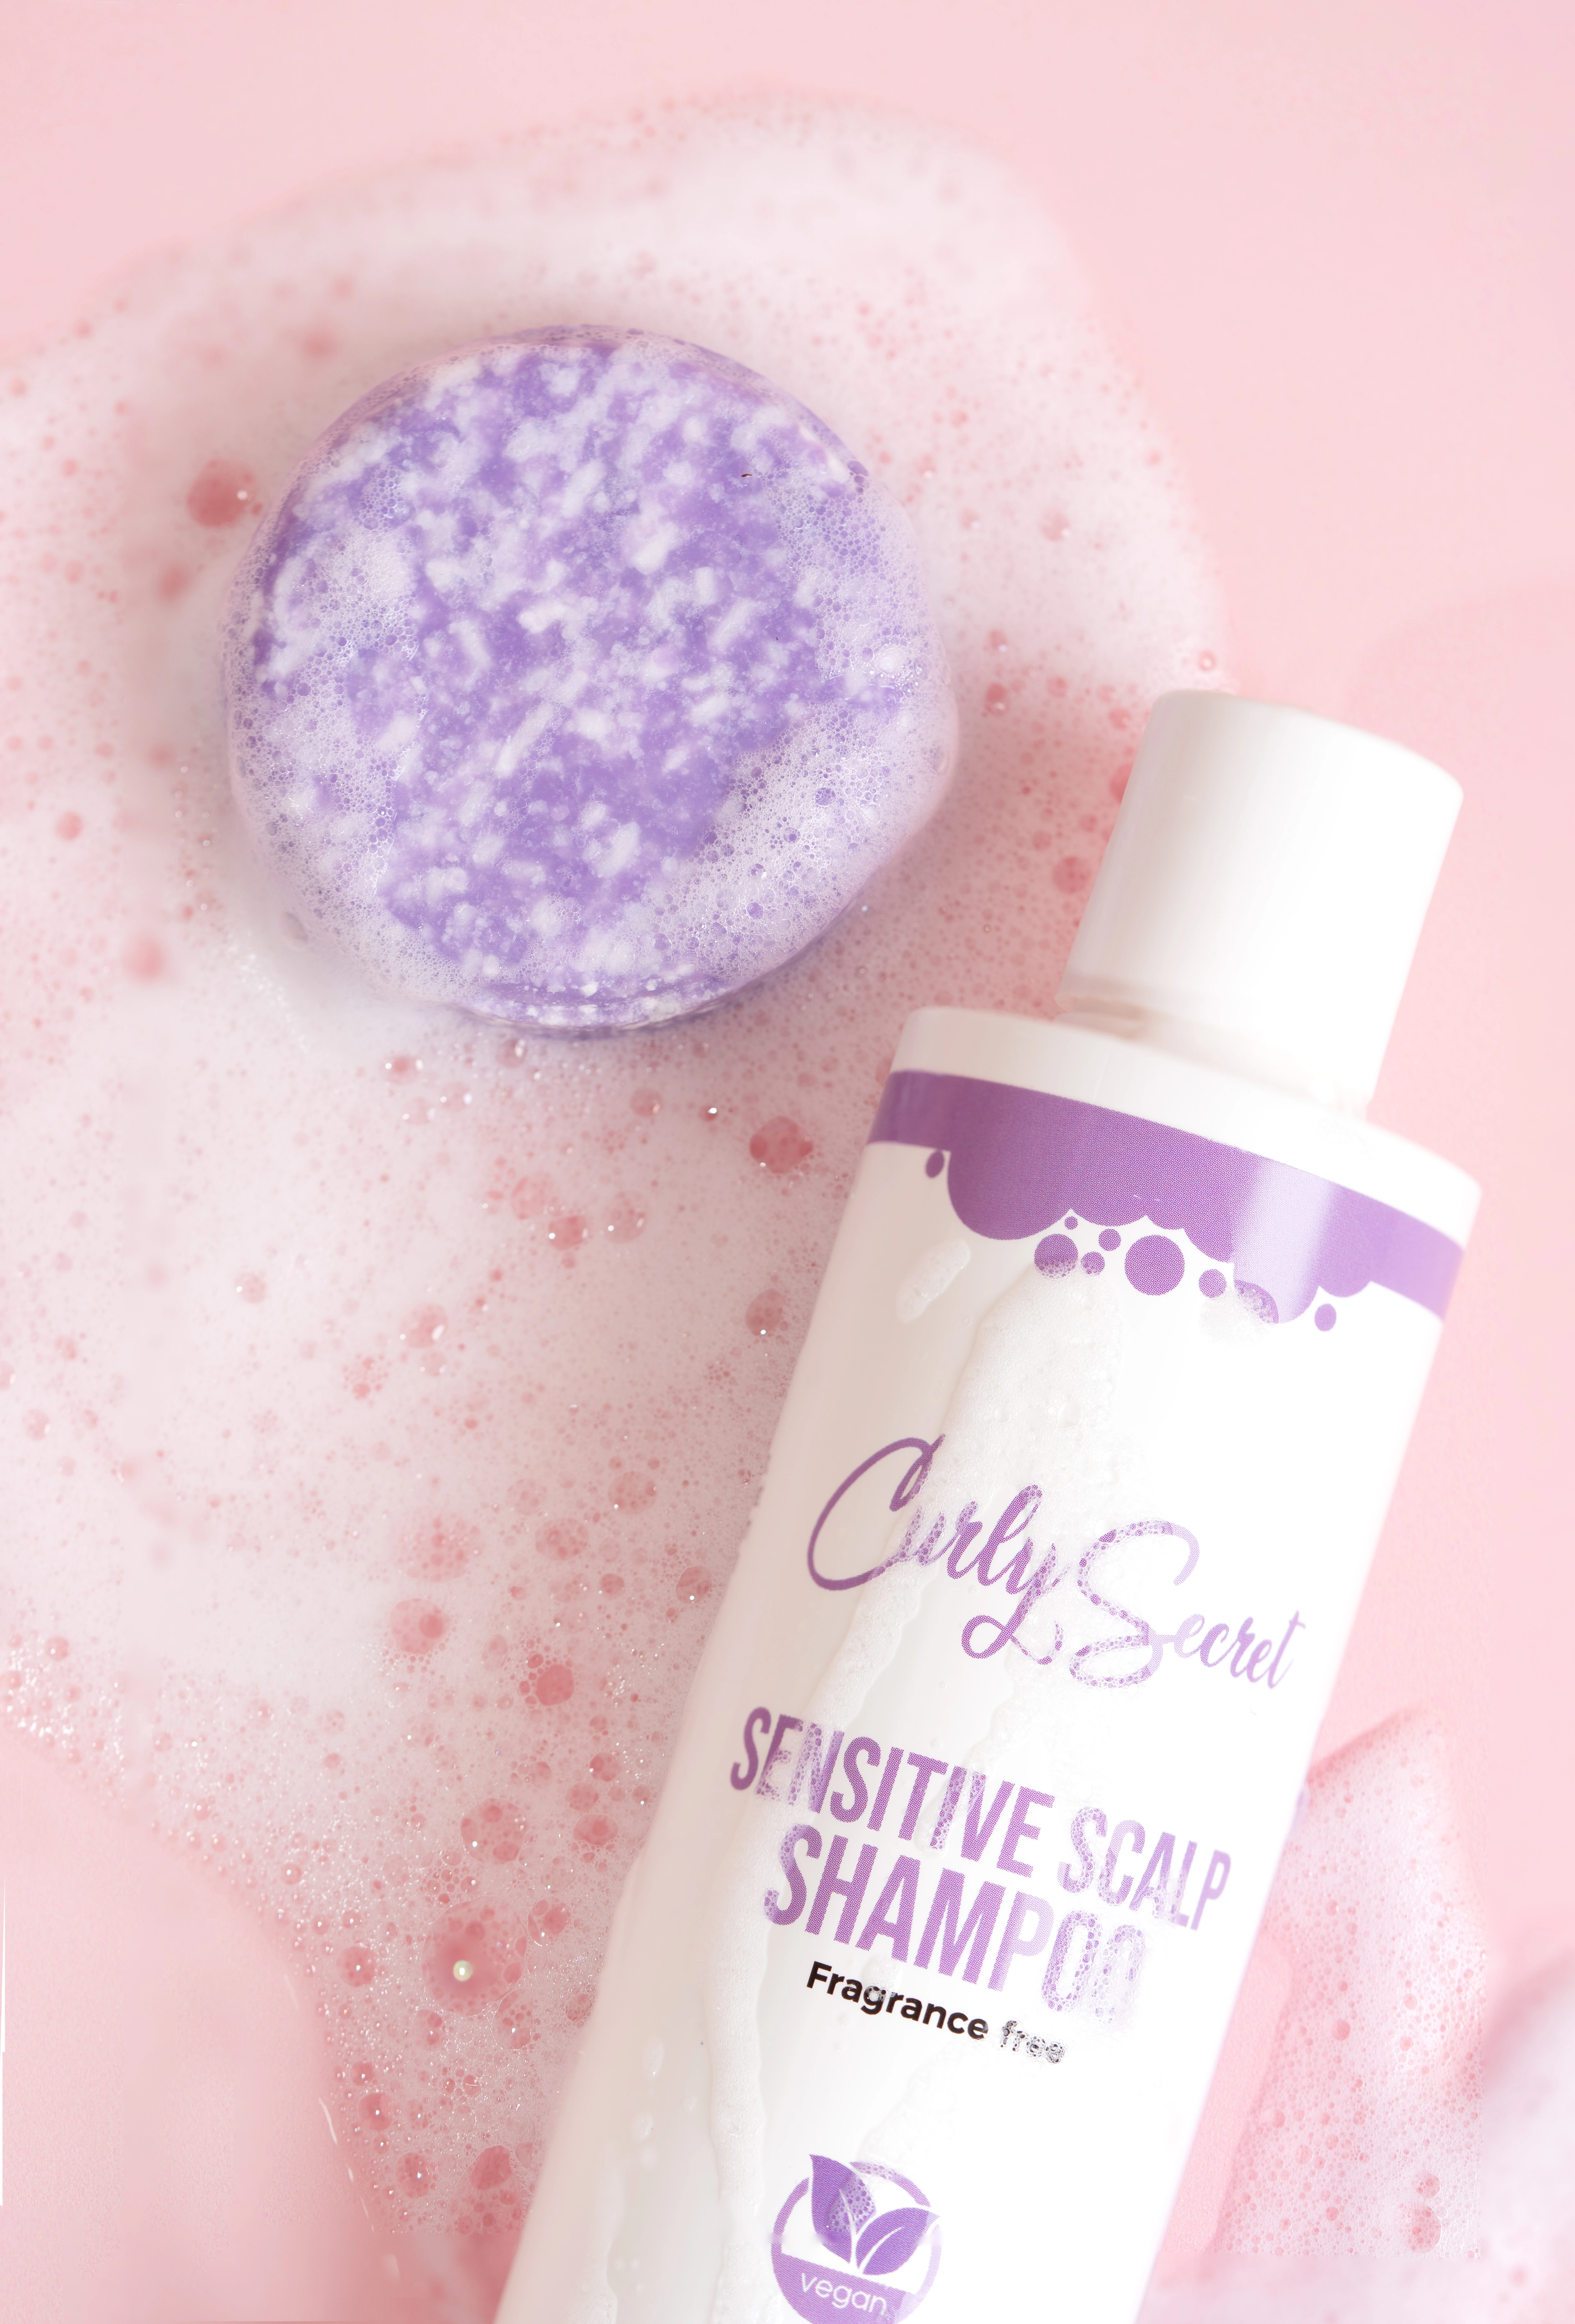 Curly Secret Shampoo Bar - Fragrance Free 